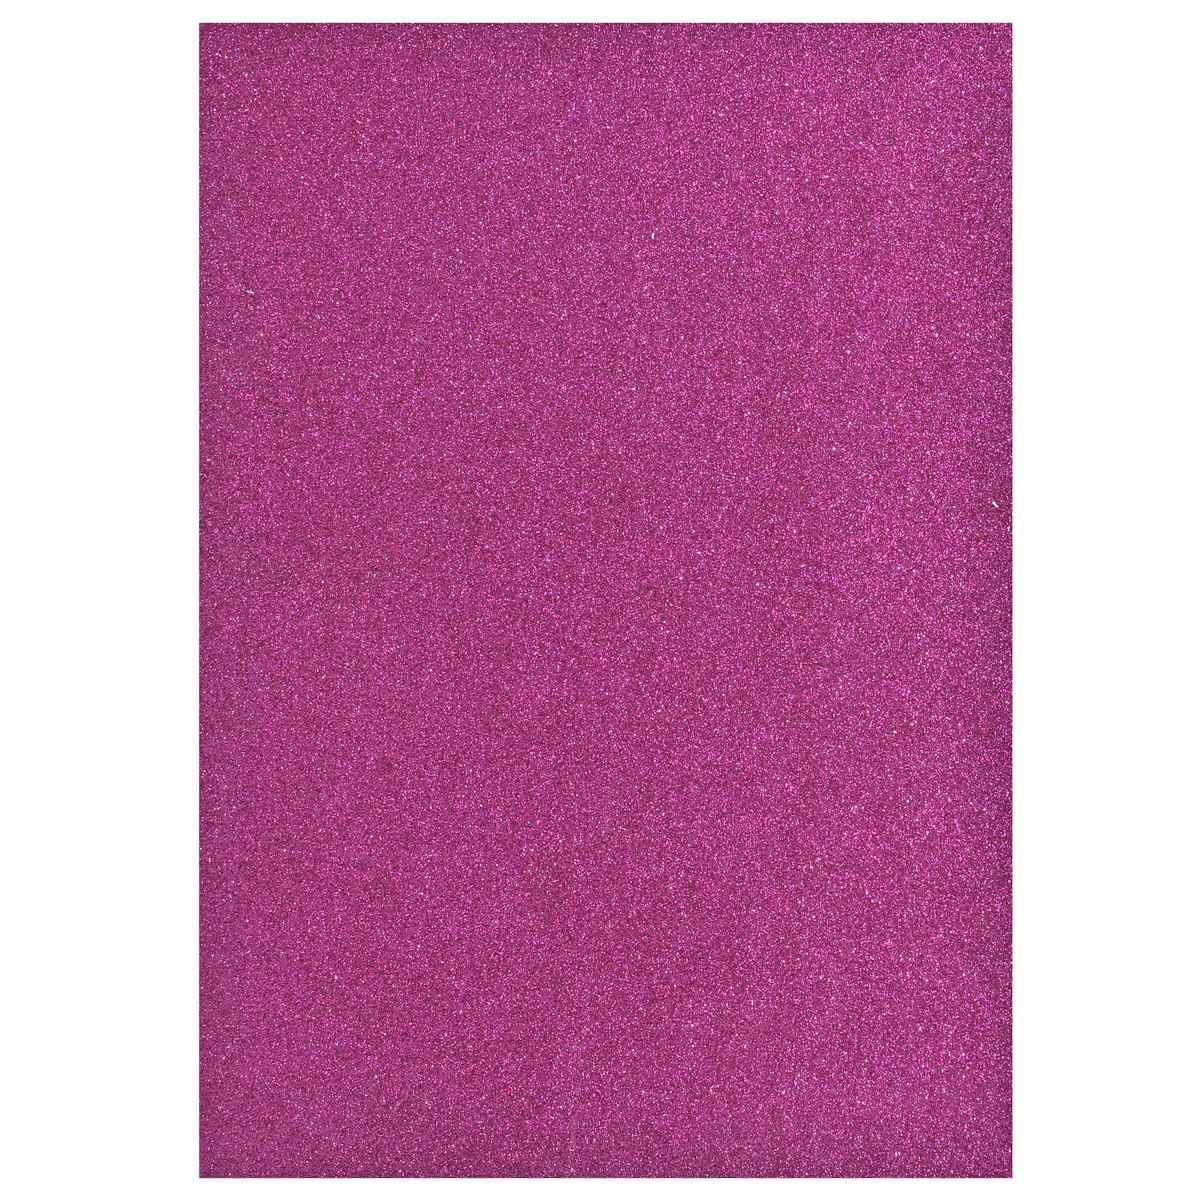 jags-mumbai Glitter Paper & Foam Sheet A4 Glitter Foam Sheet With Sticker R Pink 26164RPK